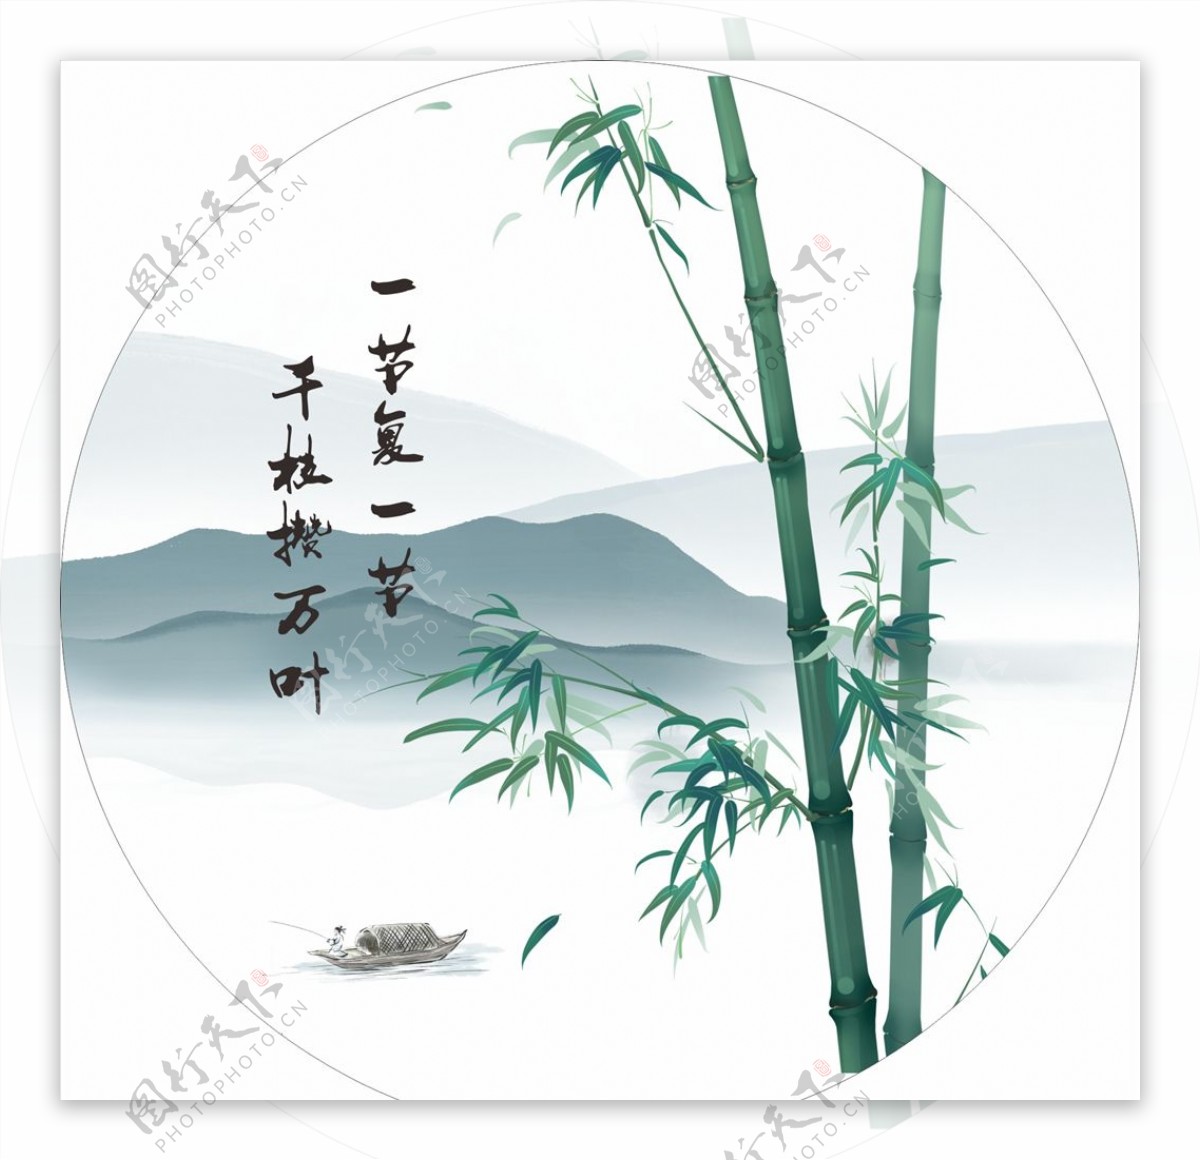 竹子水墨画图片